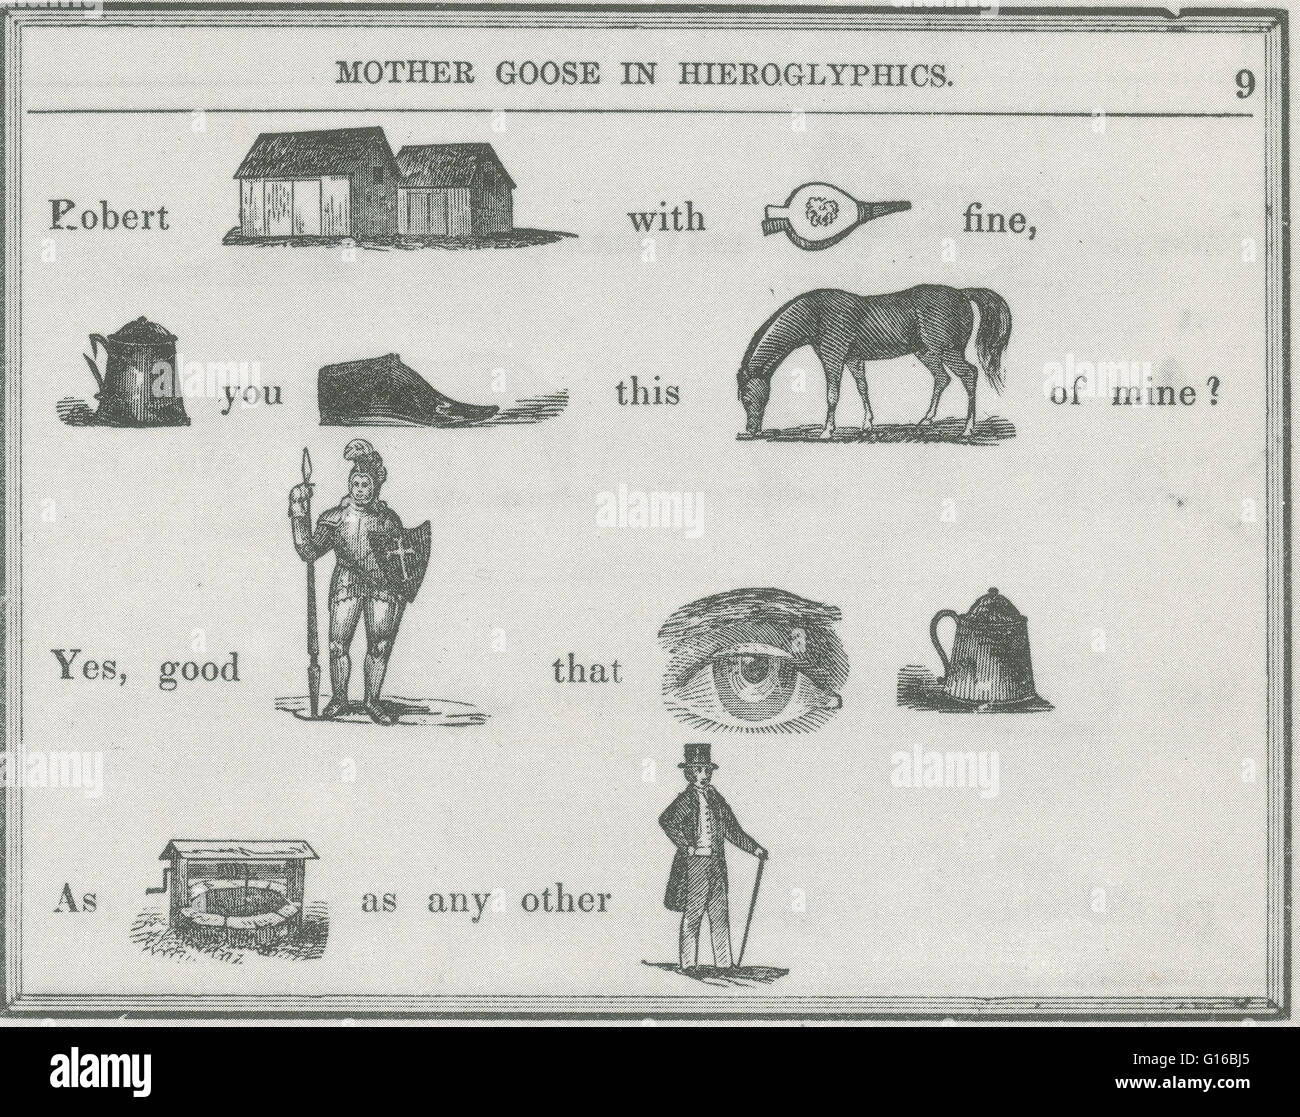 Mother Goose in Hieroglyphen ist ein Buch für Kinder von E.F. Bleiler, ursprünglich veröffentlicht im Jahre 1849. Das Buch enthält bekannte Kinderreime, geschrieben mit Bildern (ca. 400 detaillierte Holzschnitte) bestimmte Wörter (Rebus) zu ersetzen. Ein Rebus ist eine Anspielung Stockfoto